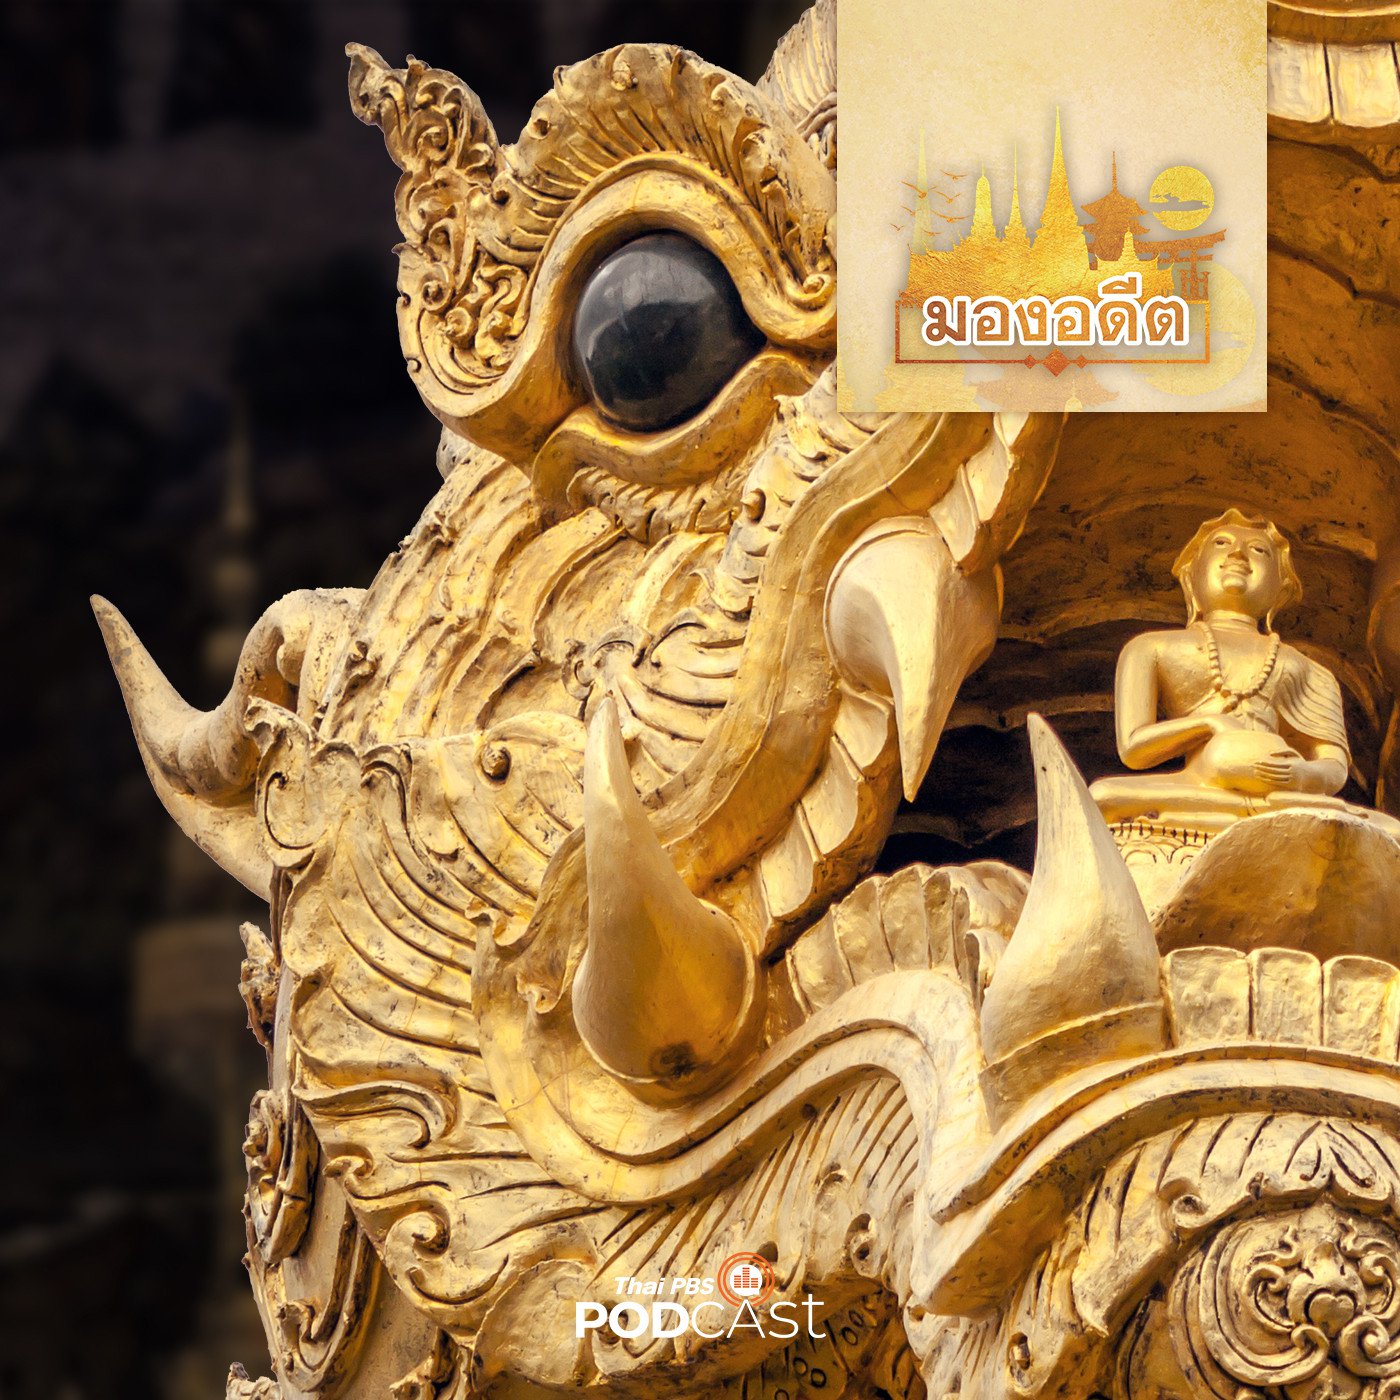 มองอดีต EP. 22: รูปราชสีห์หรือสิงห์ในงานศิลปะไทย